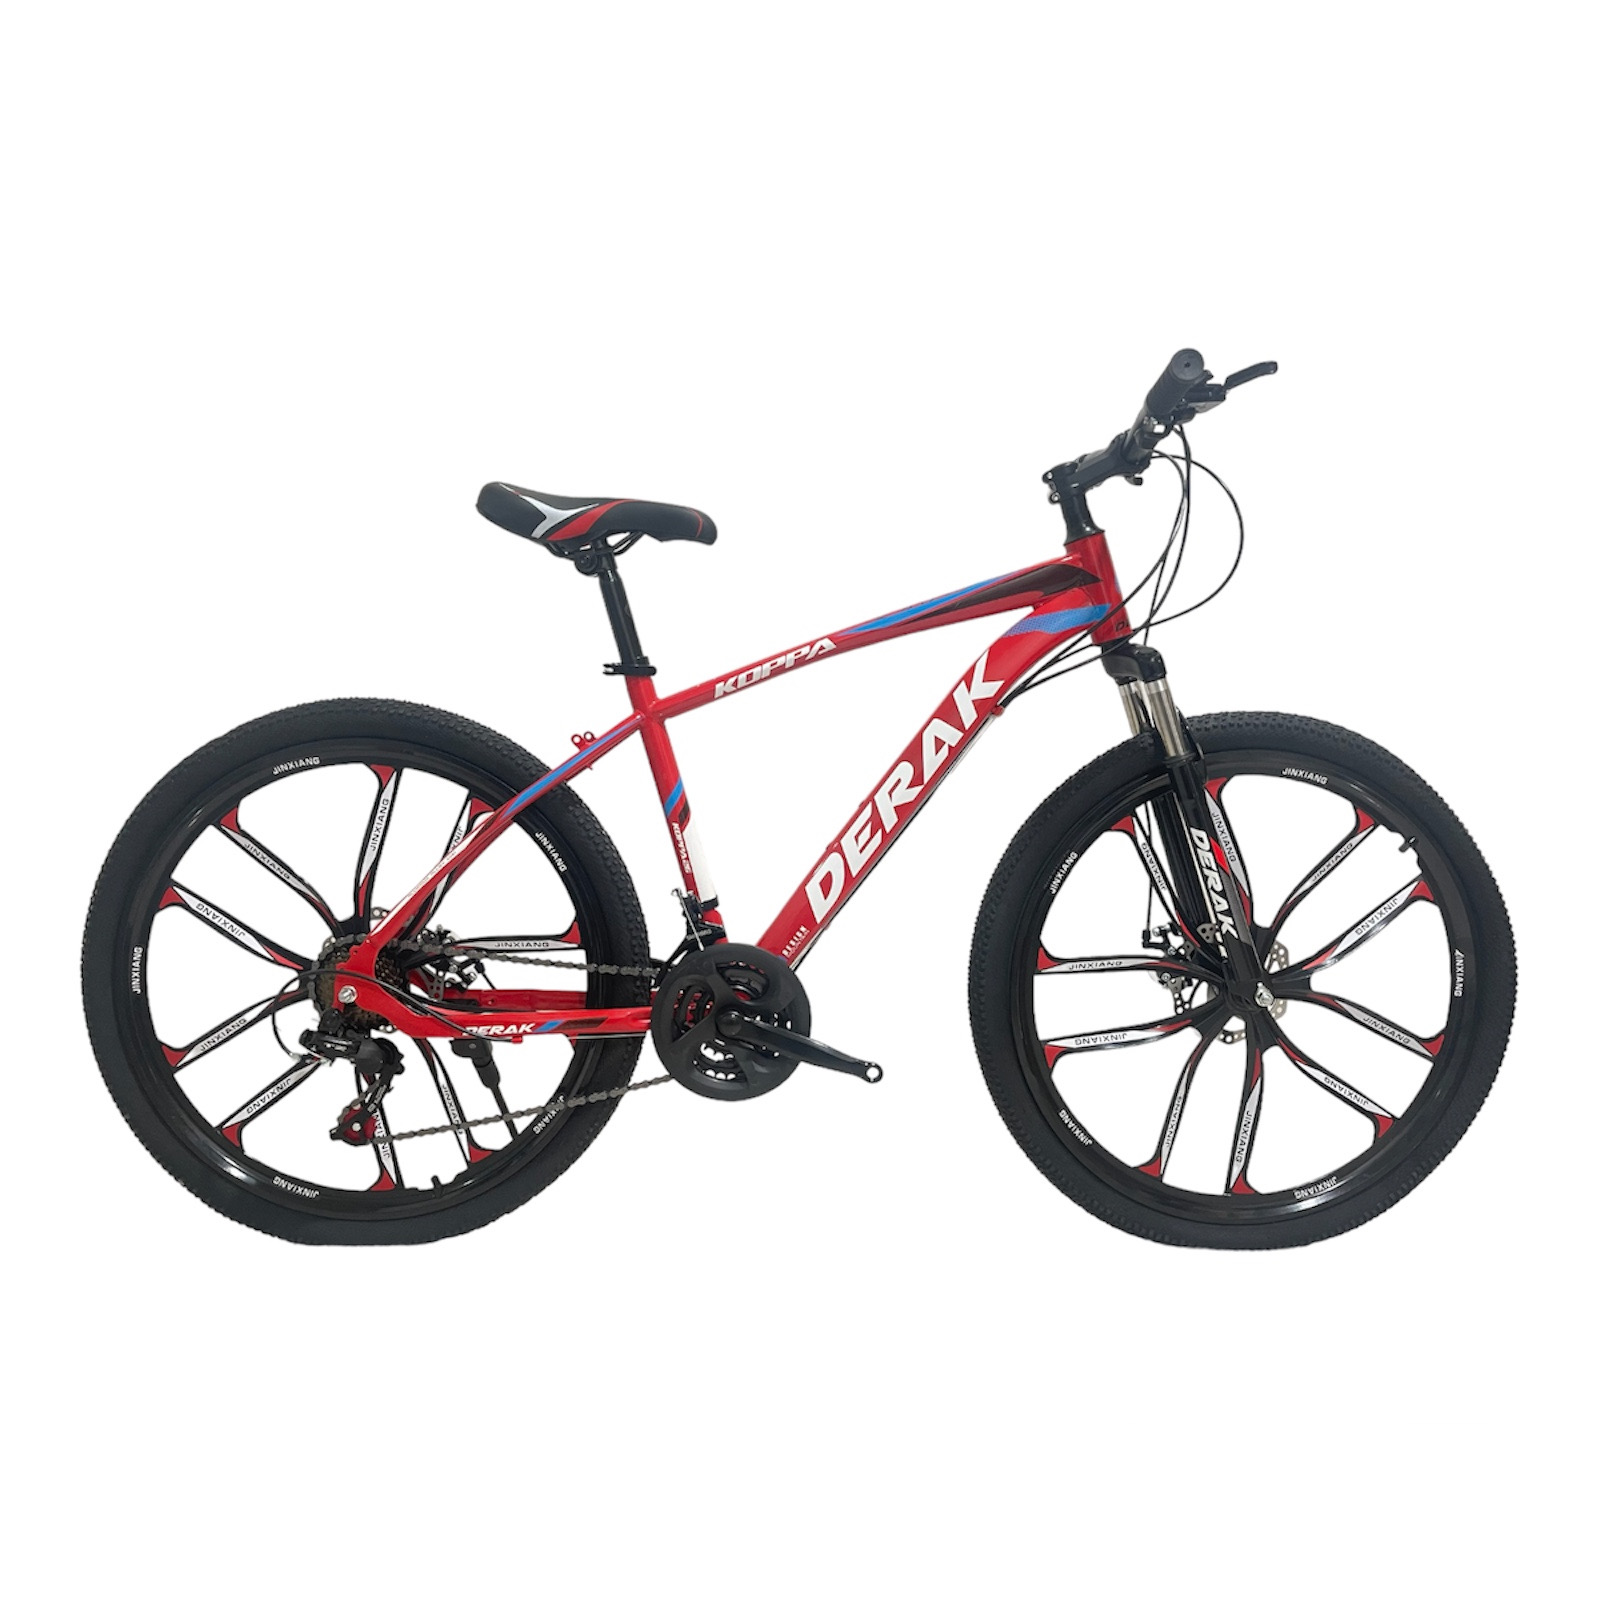 نکته خرید - قیمت روز دوچرخه کوهستان دراک مدل کوپا اسپرت سایز طوقه 26 خرید